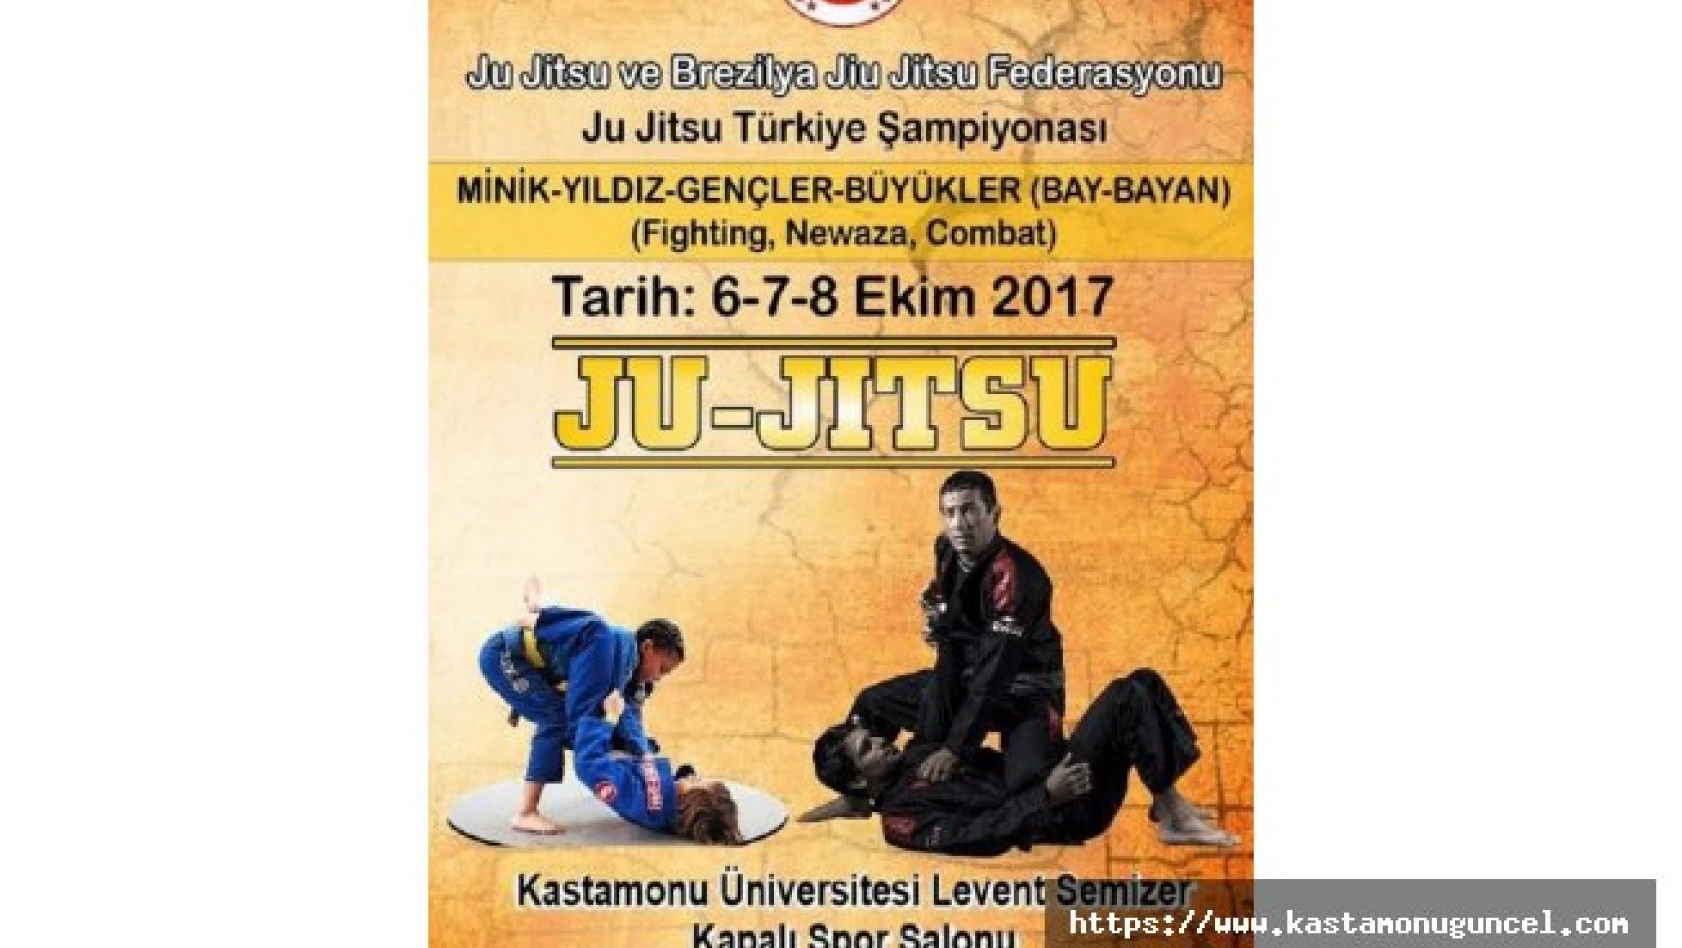 Ju Jitsu Türkiye Şampiyonası Kastamonu'da yapılacak